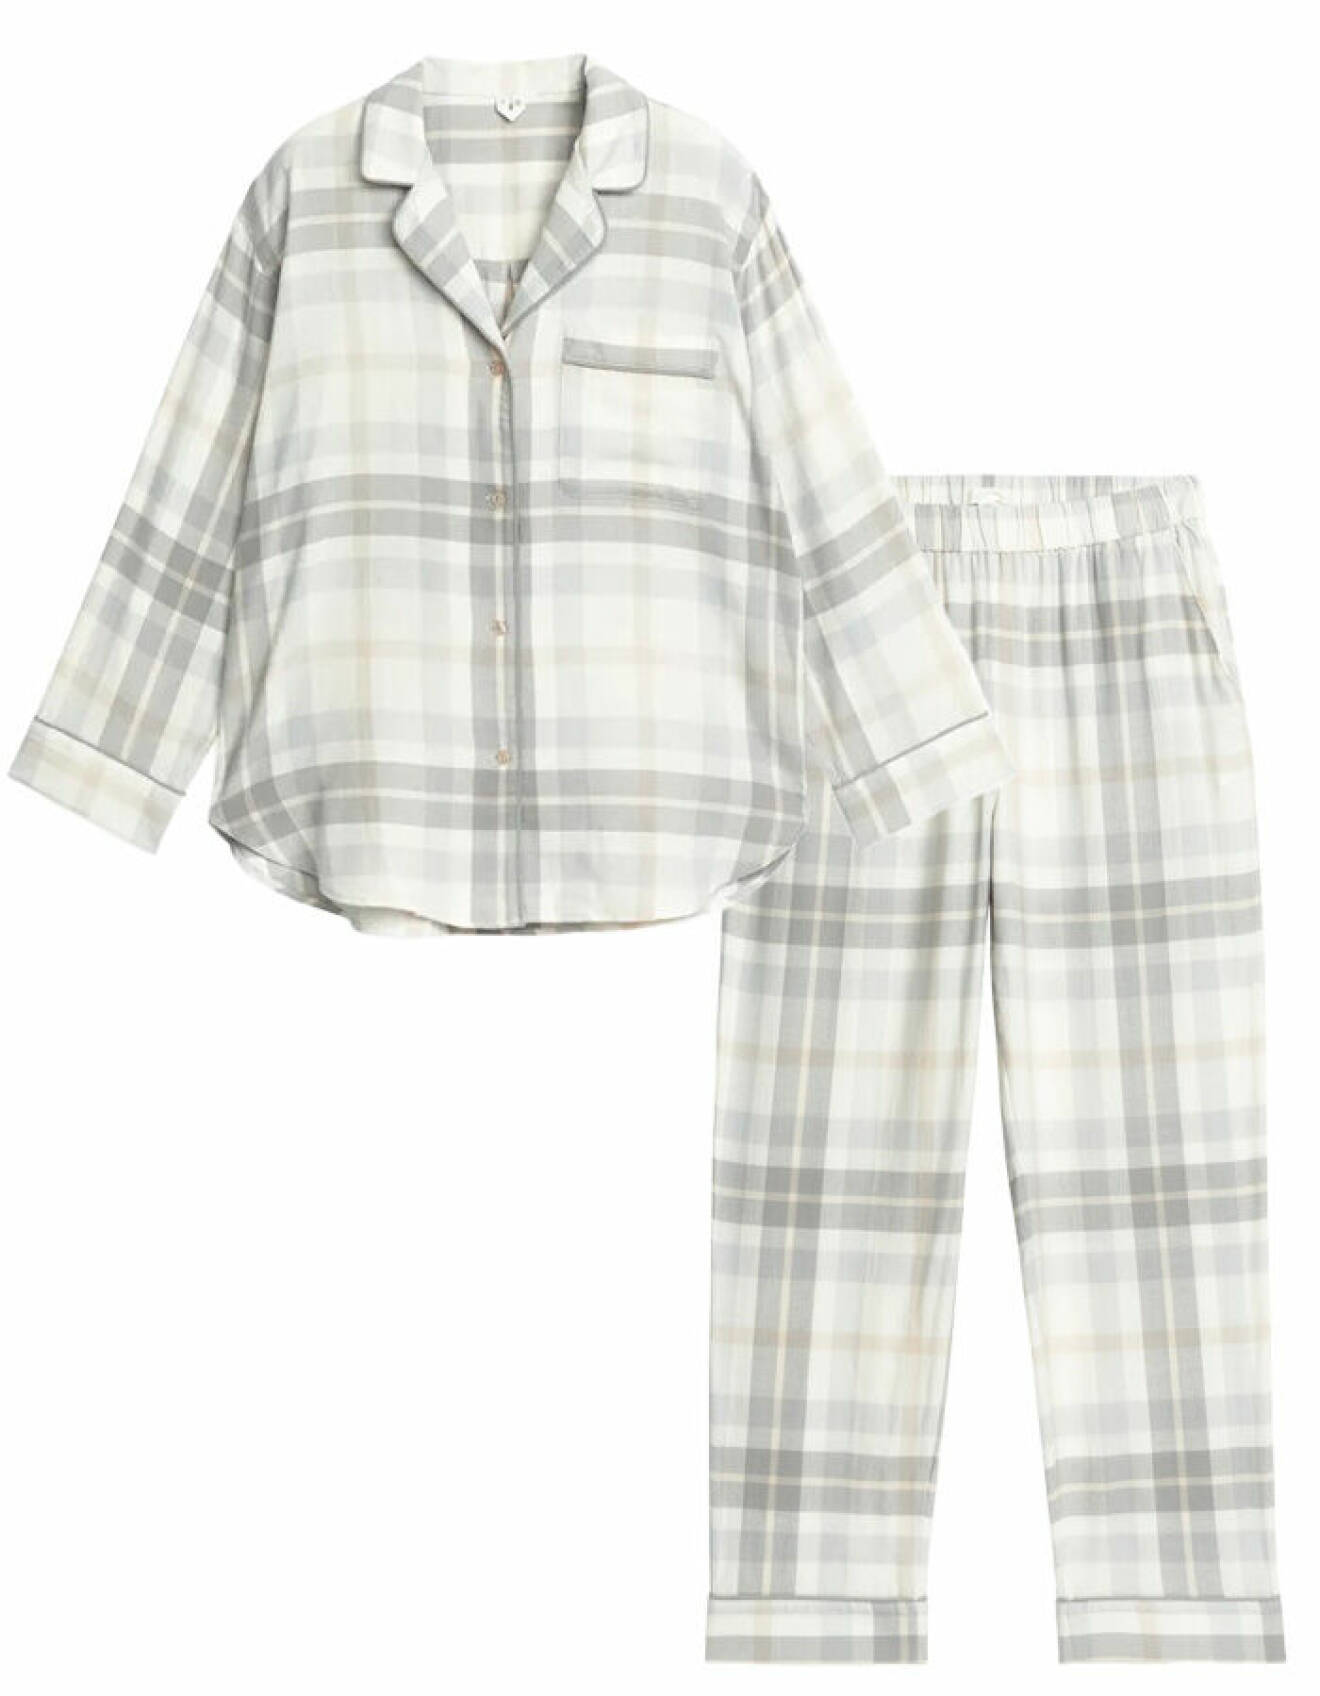 matchande pyjamasset med byxor och skjorta i ekologisk bomull från Arket